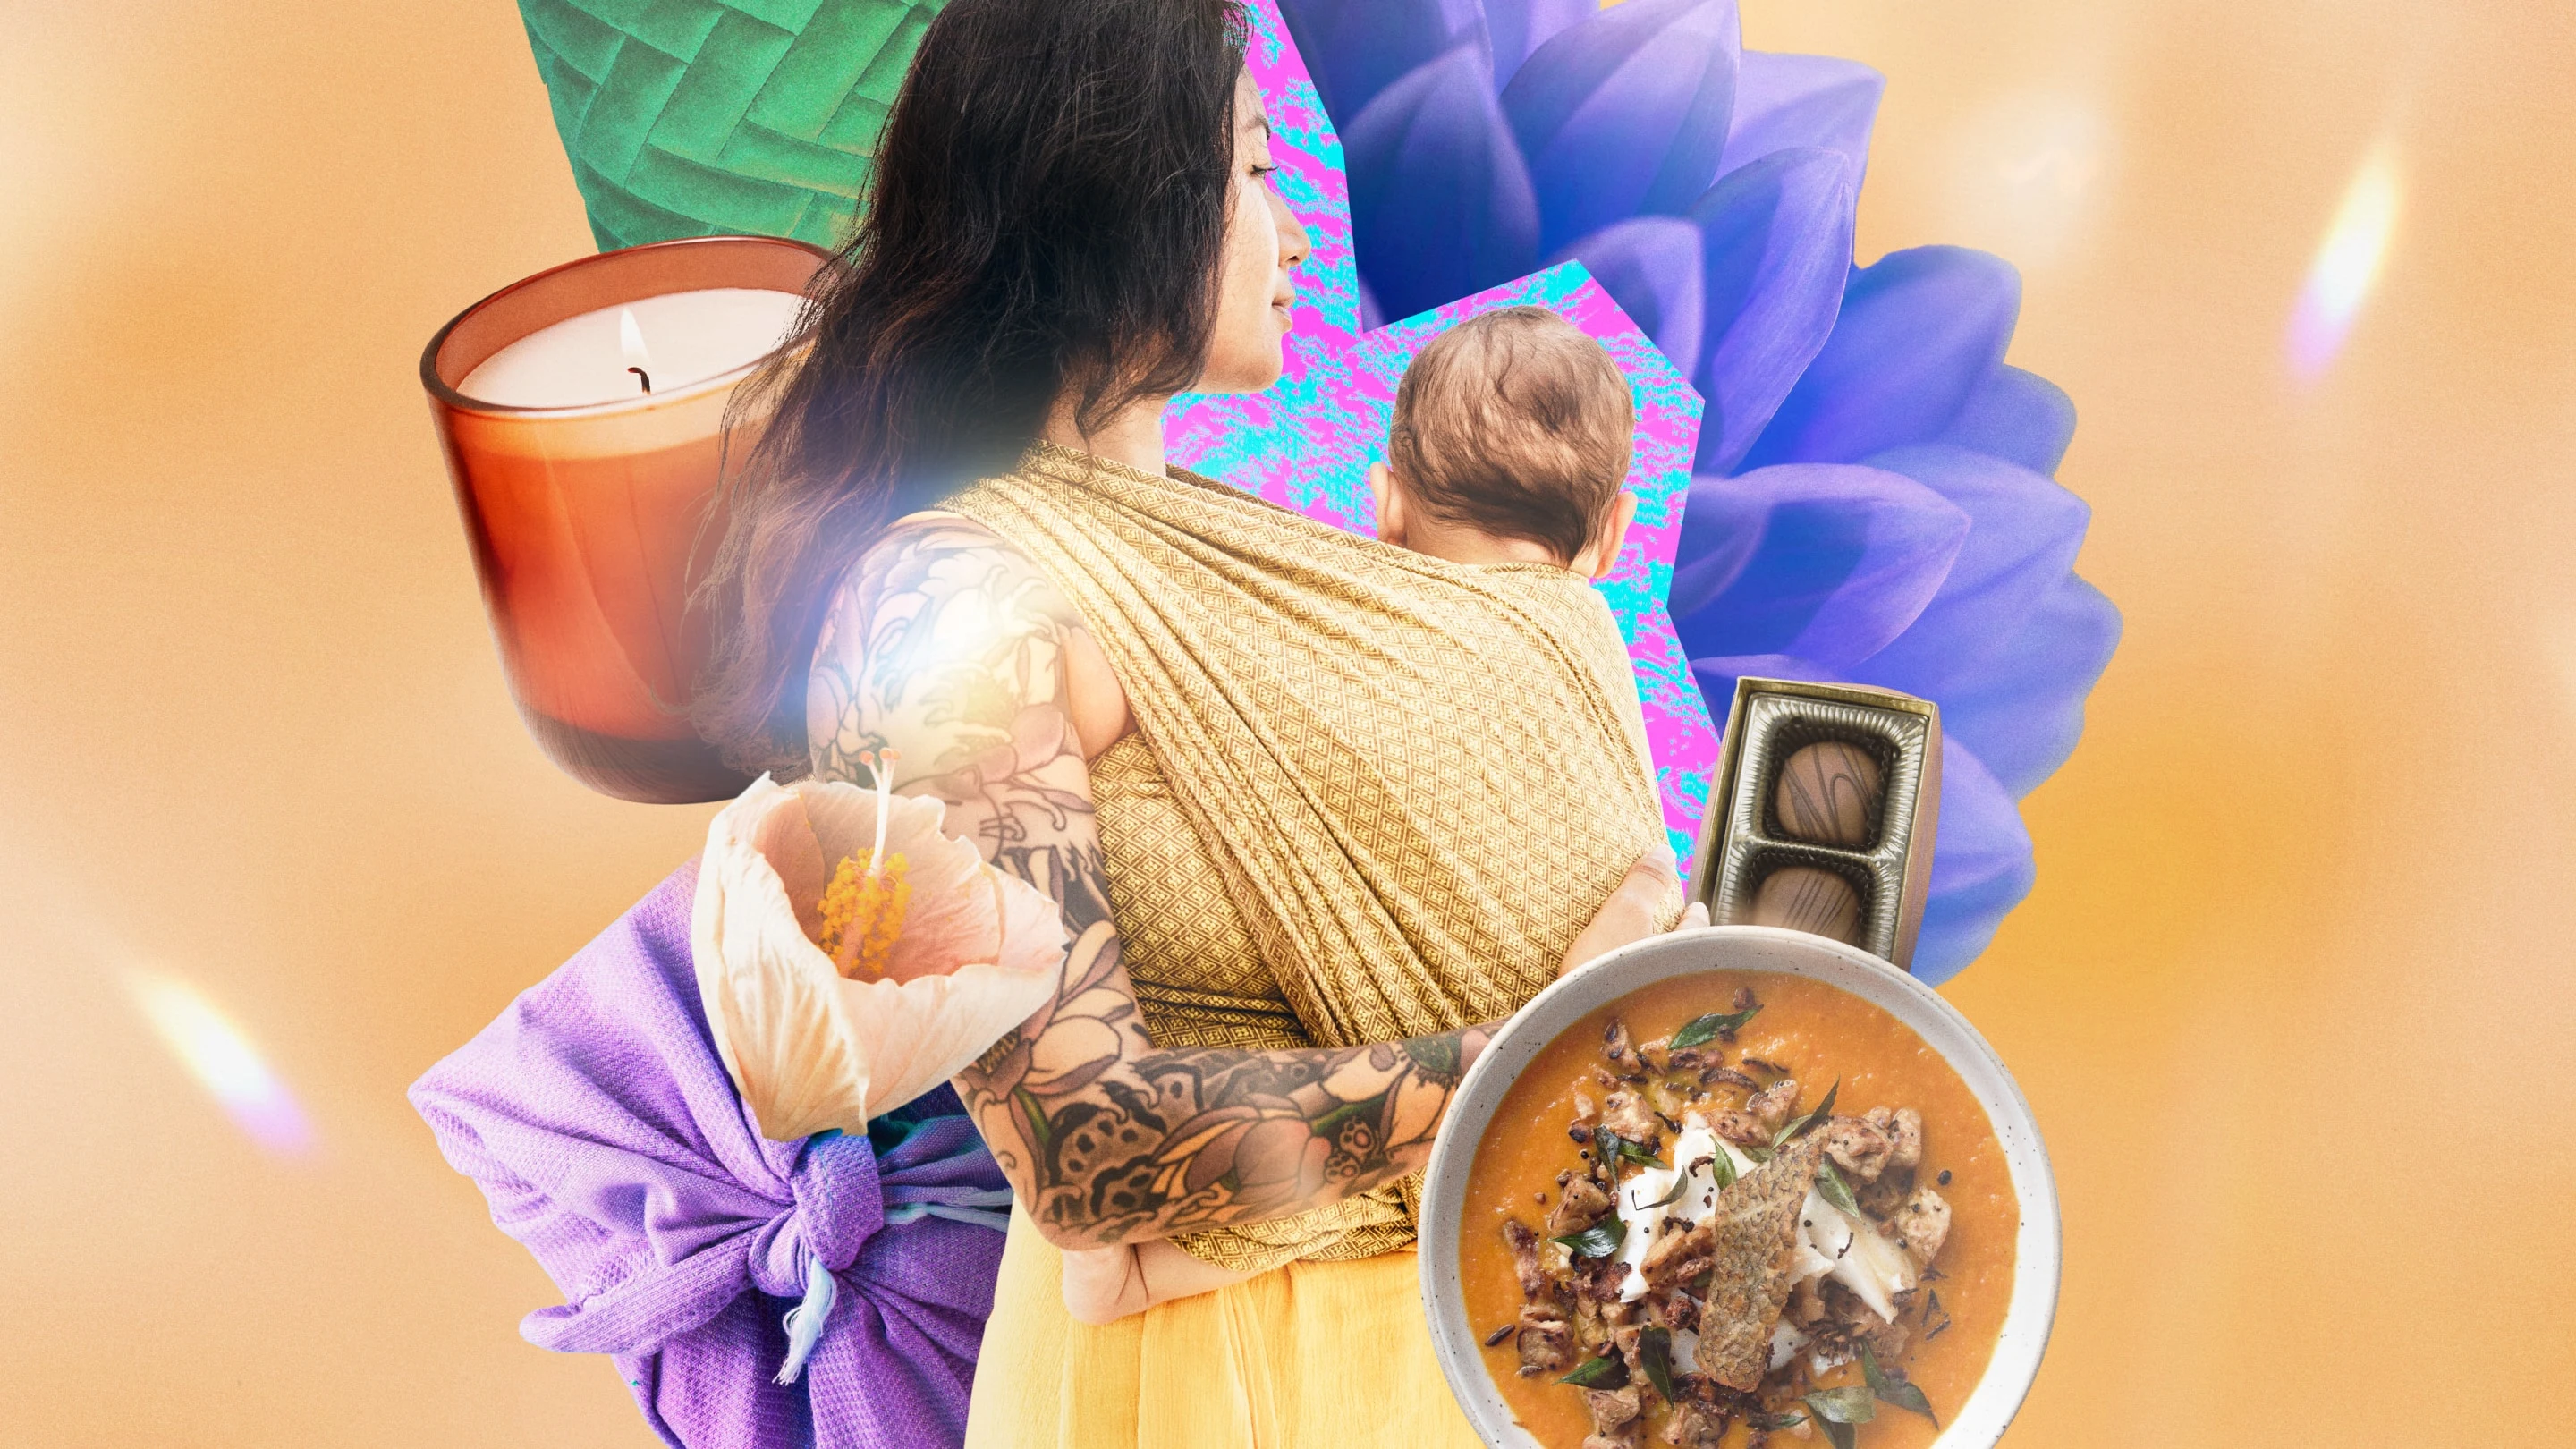 Una mujer con tatuajes cargando a un bebé con varios elementos a su alrededor, como una vela, pétalos de flores, una caja de chocolates, sopa y mantas.